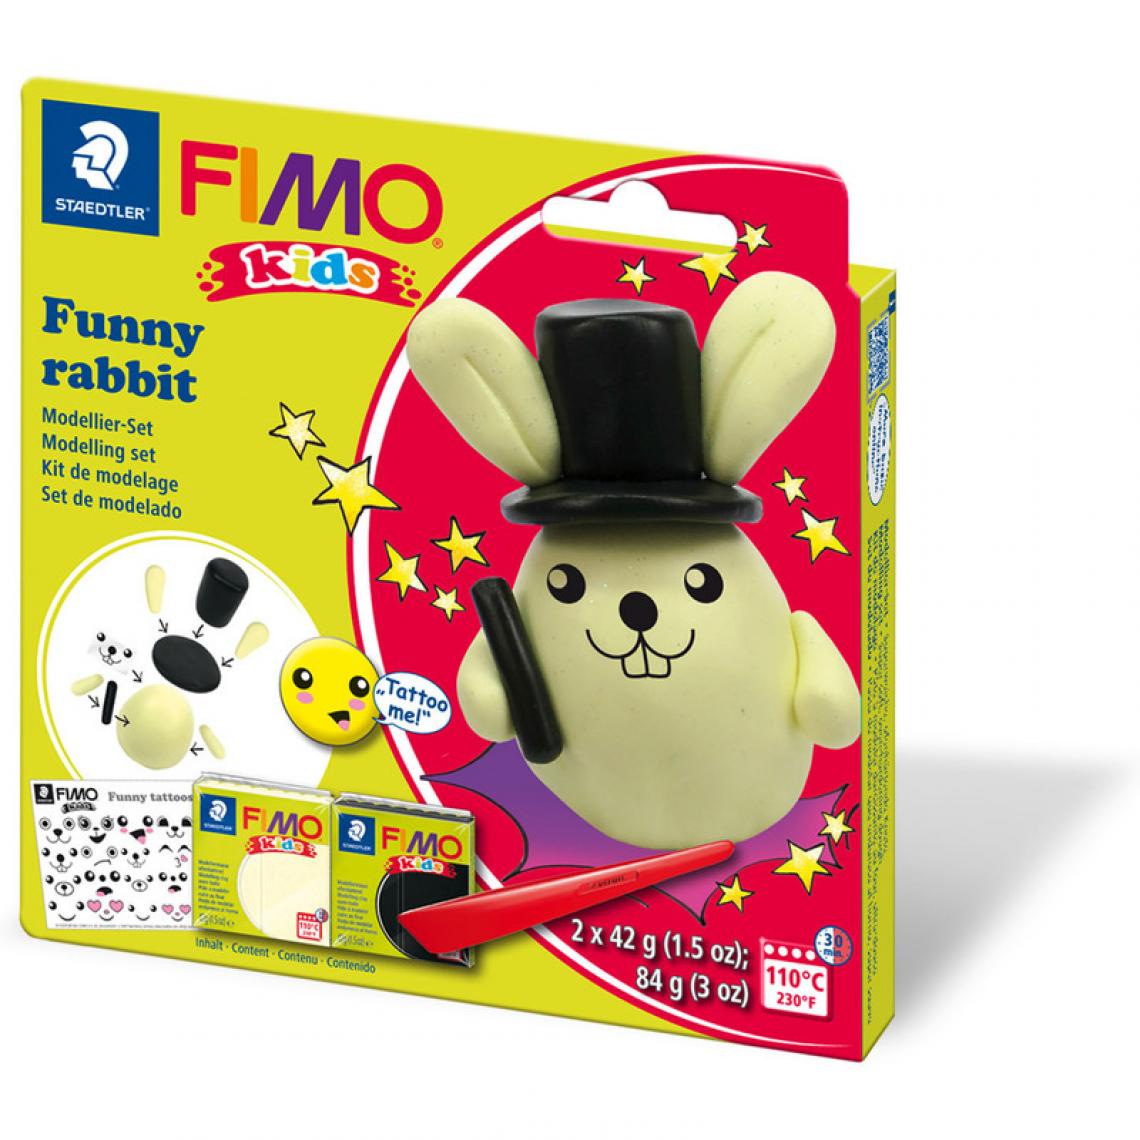 Fimo - FIMO Kit de modelage kids 'Funny rabbit', blister () - Modelage